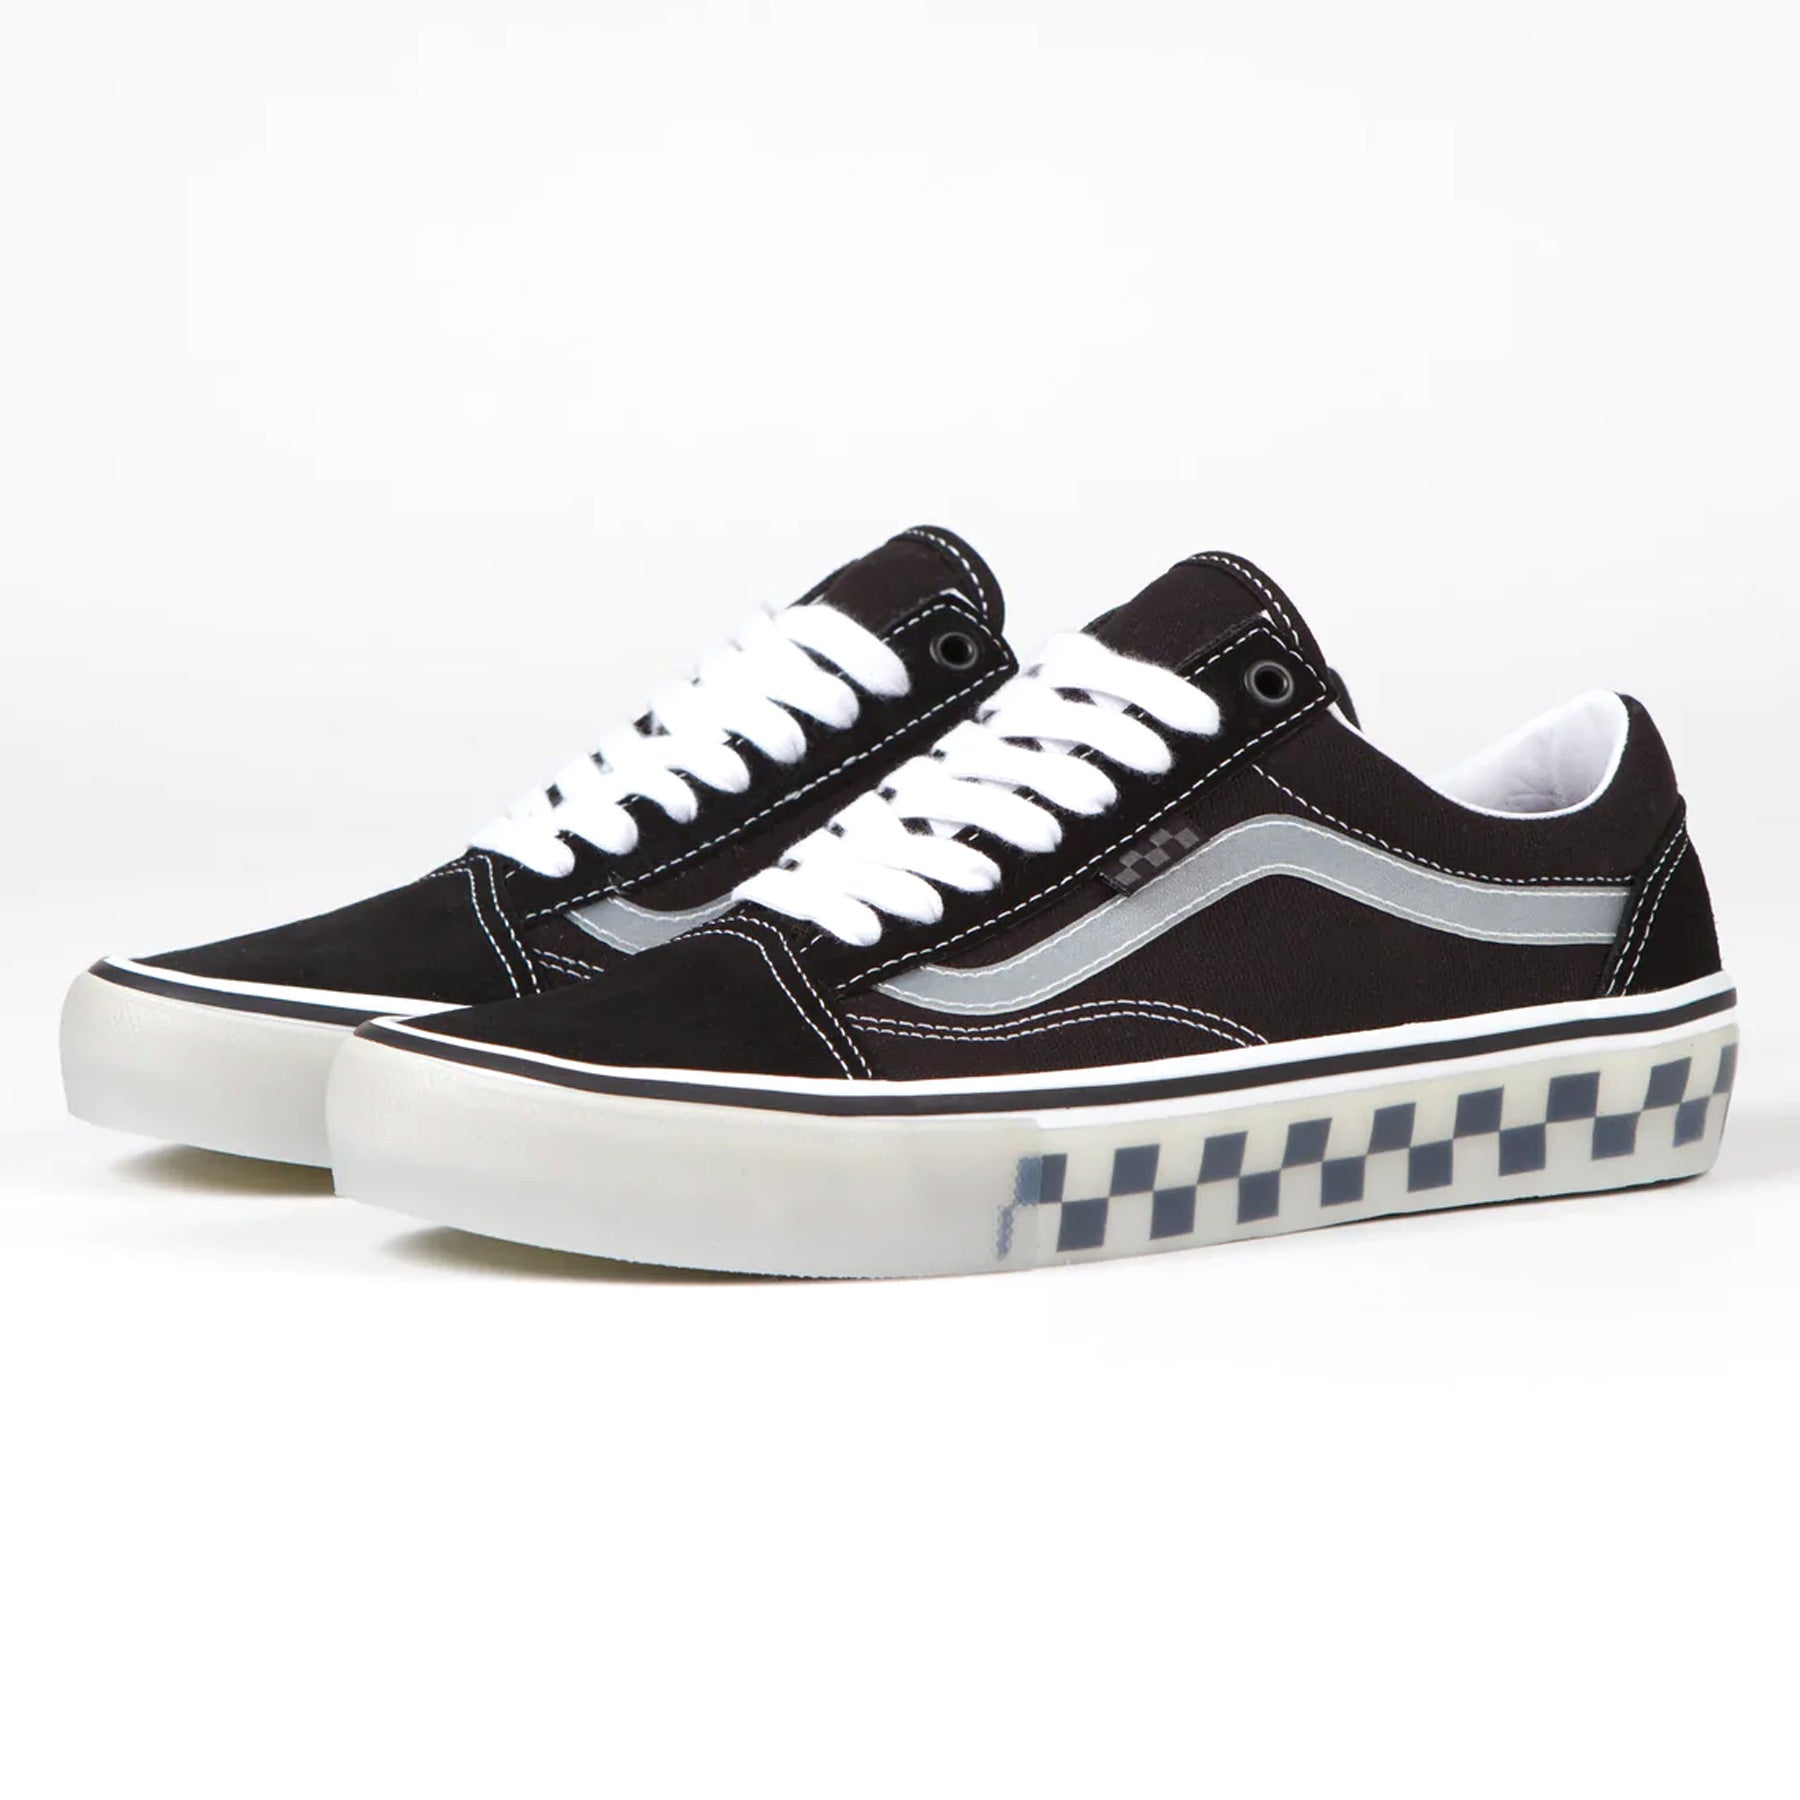 Vans Skate Old Skool Shoes - Black/Translucent